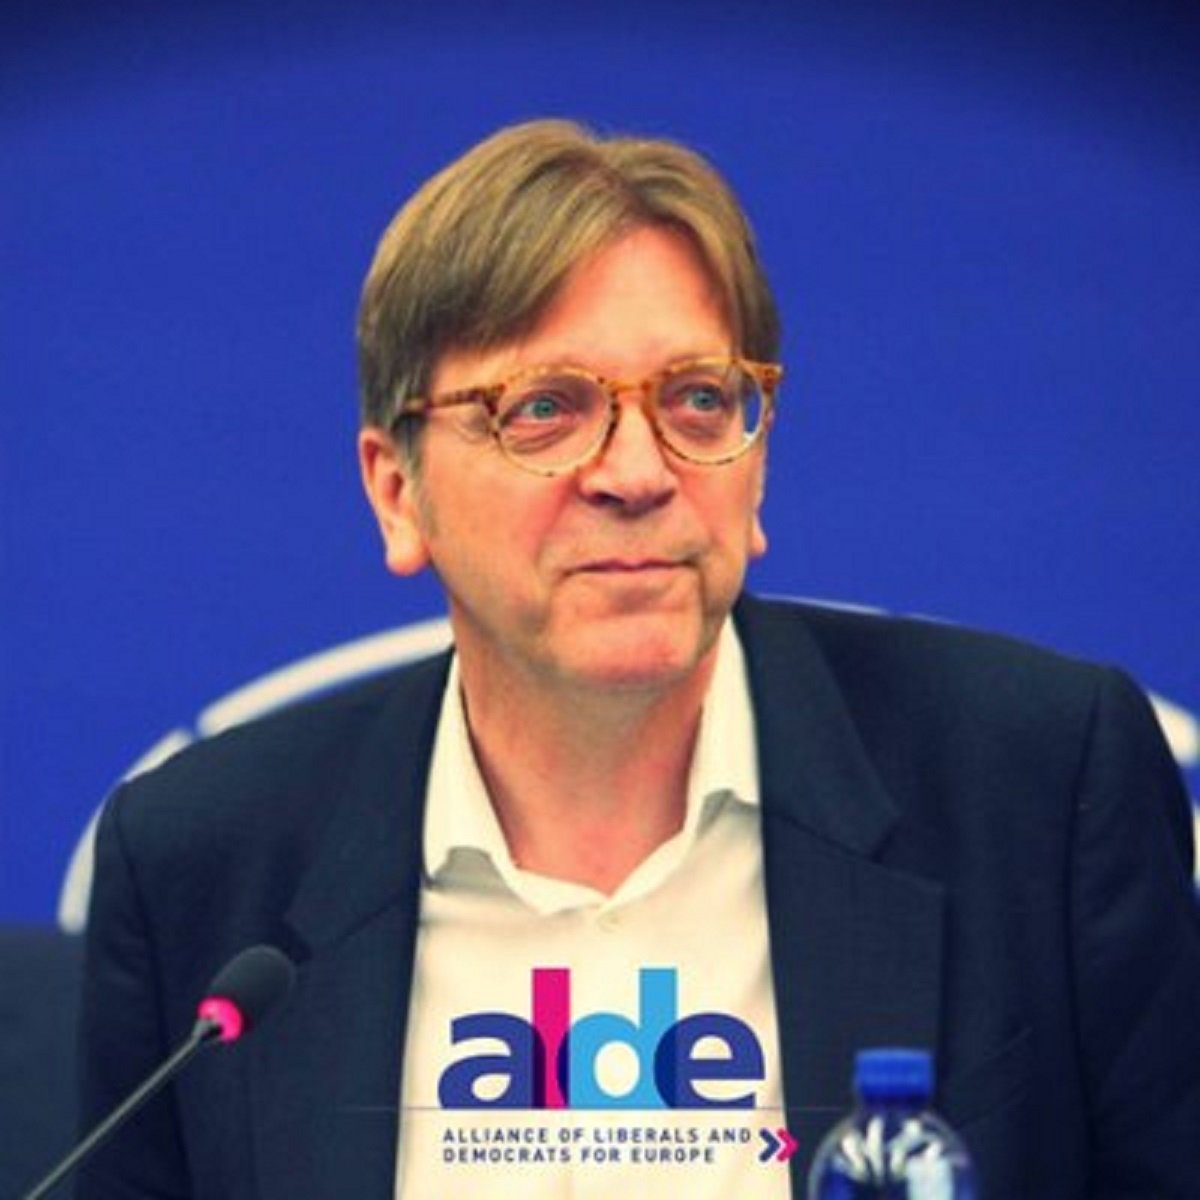 El portavoz de los liberales europeos se desmarca de Cs i critica los encarcelamientos